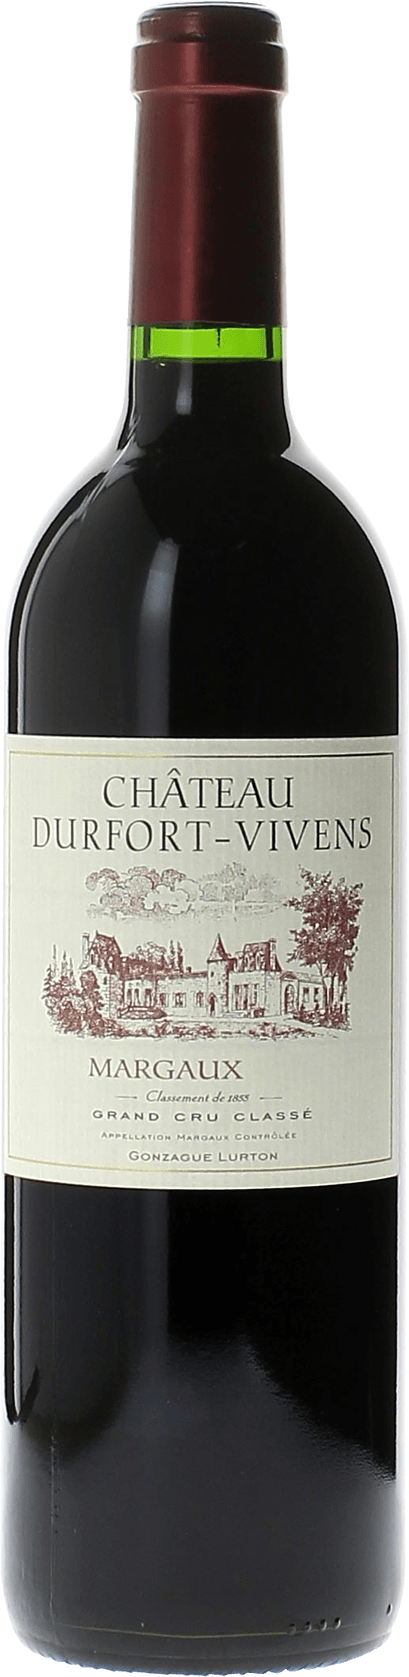 Durfort vivens 1986 2me Grand cru class Margaux, Bordeaux rouge